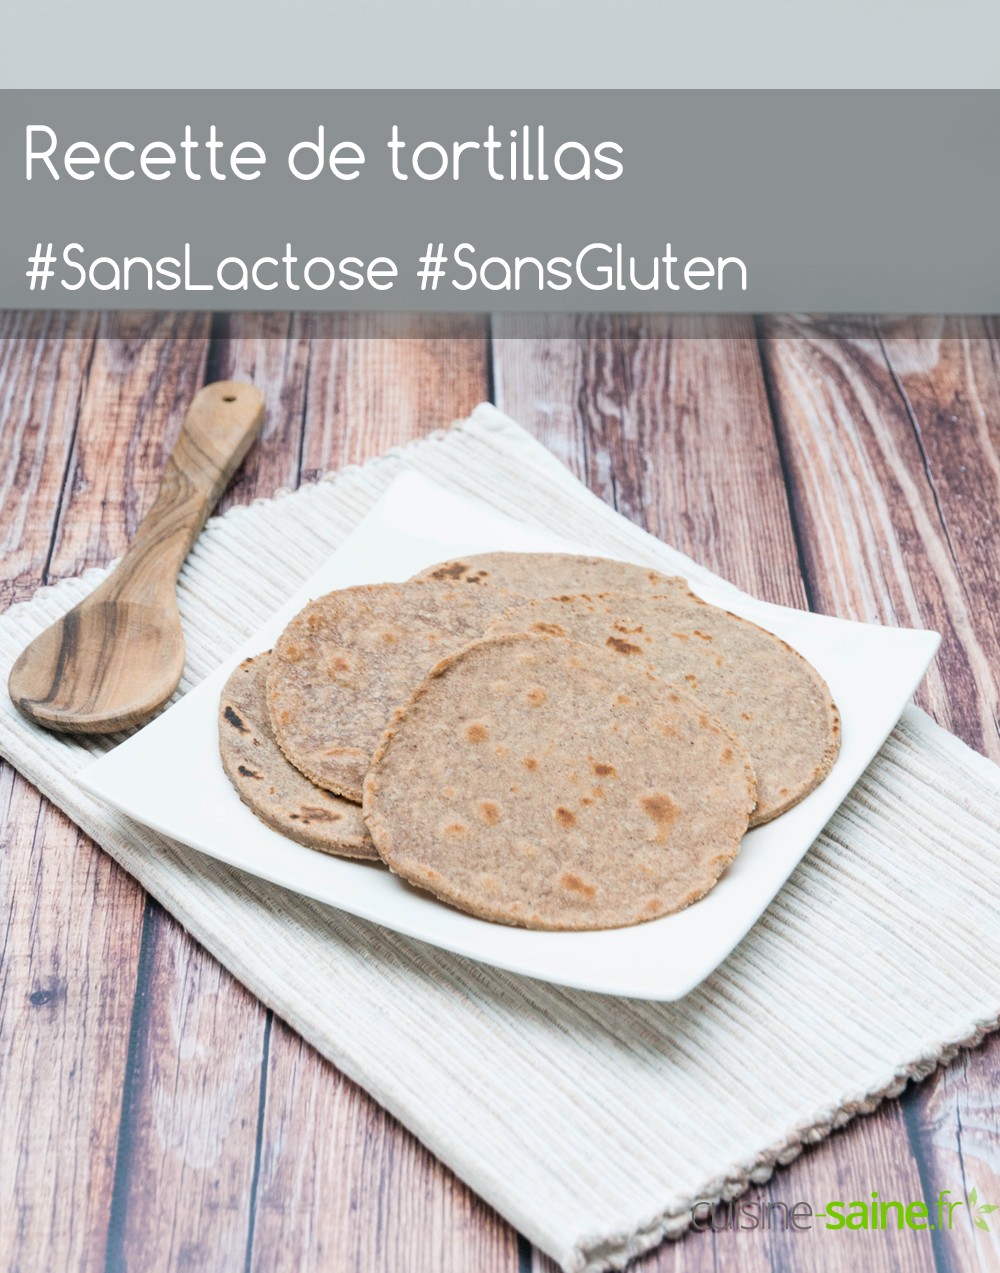 Recette de tortillas sans gluten